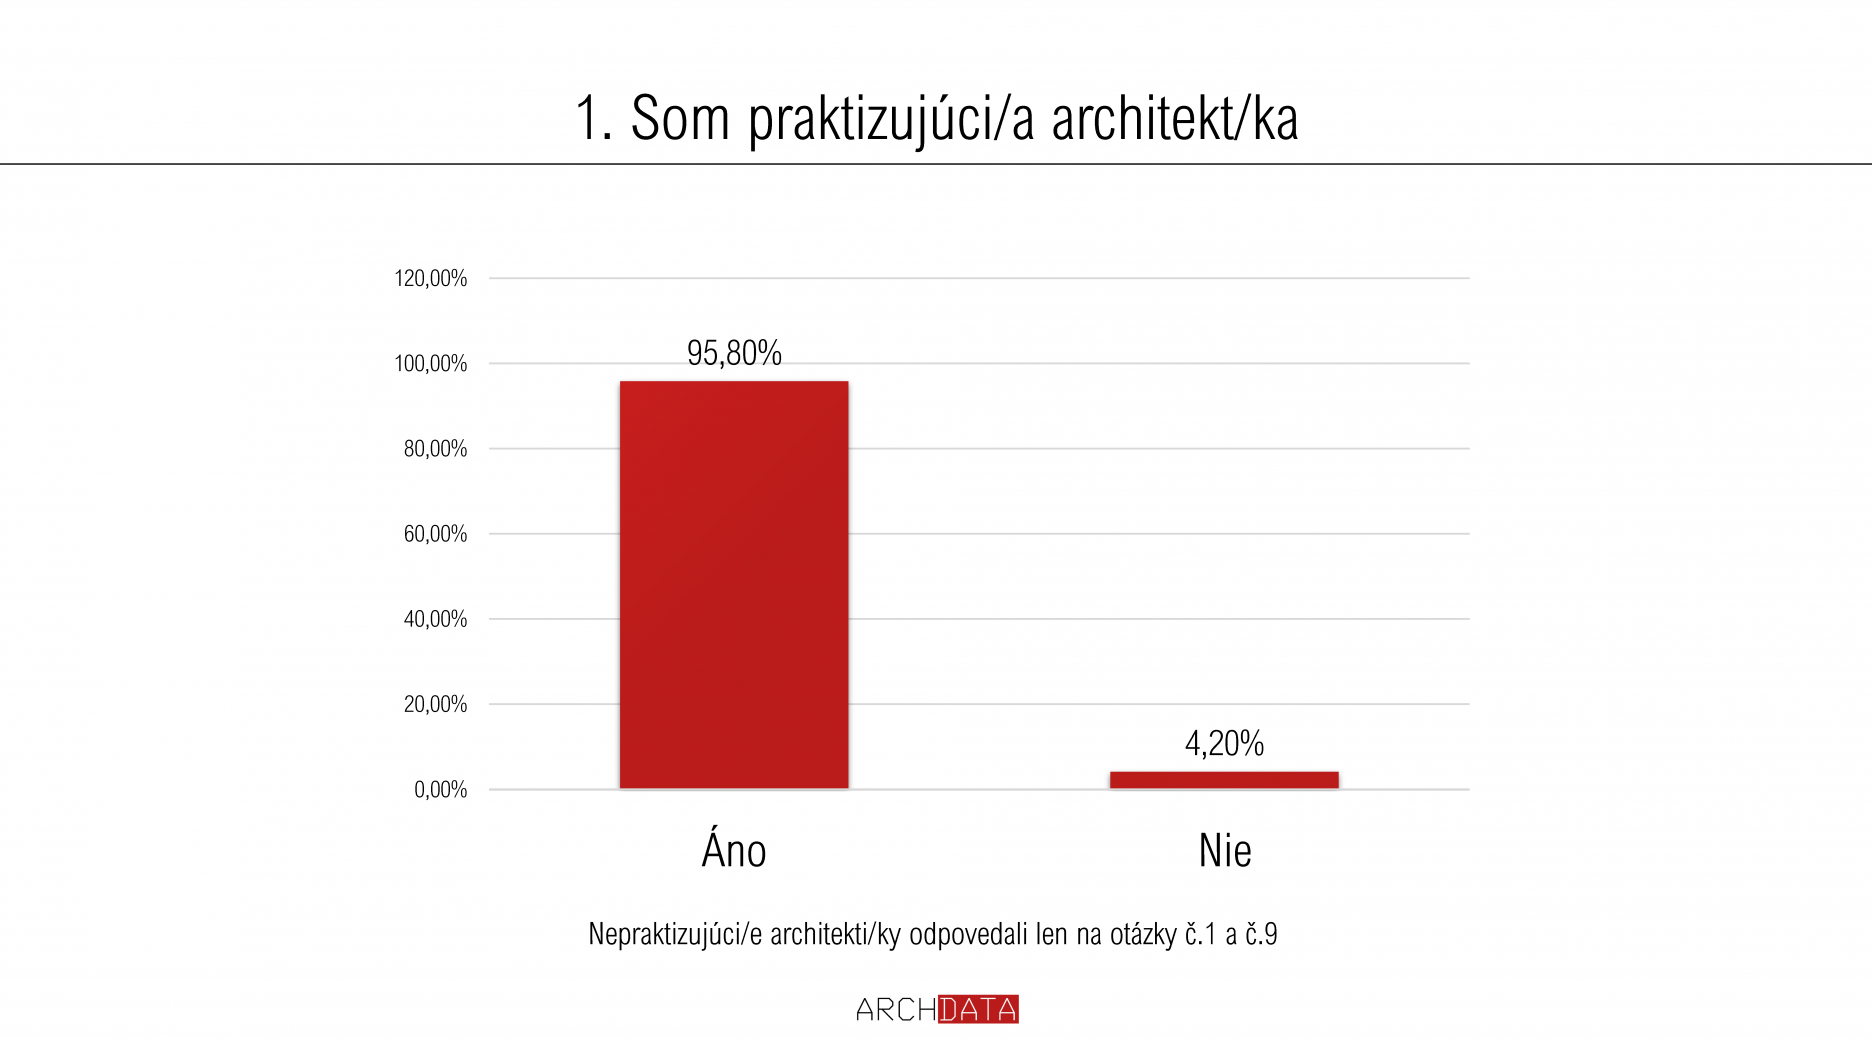 Aktívne sa prieskumu v podstatnej miere zúčastnili profesionáli - praktizujúci architekti